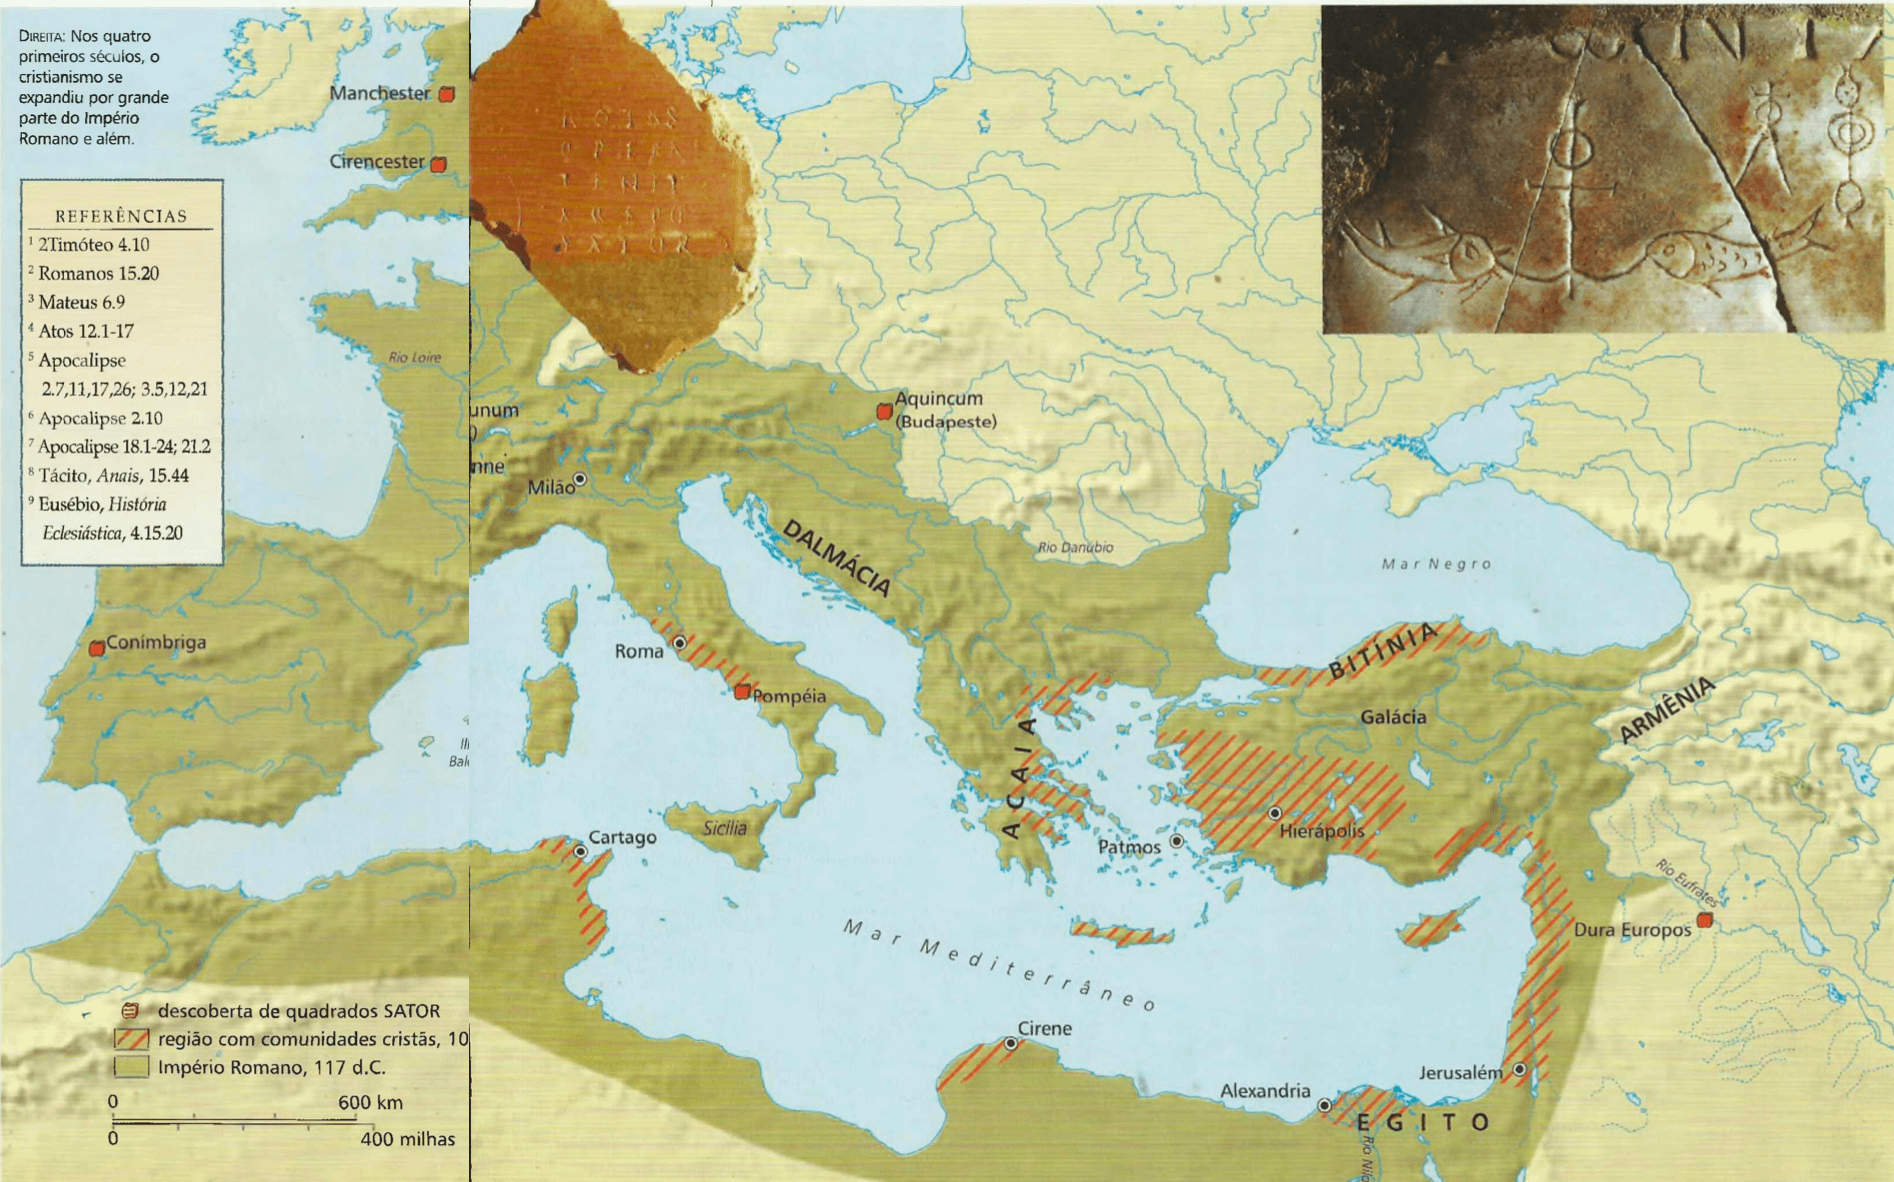 Nos quatro primeiros séculos, i cristianismo se expandiu por grande parte do Império Romano e além.